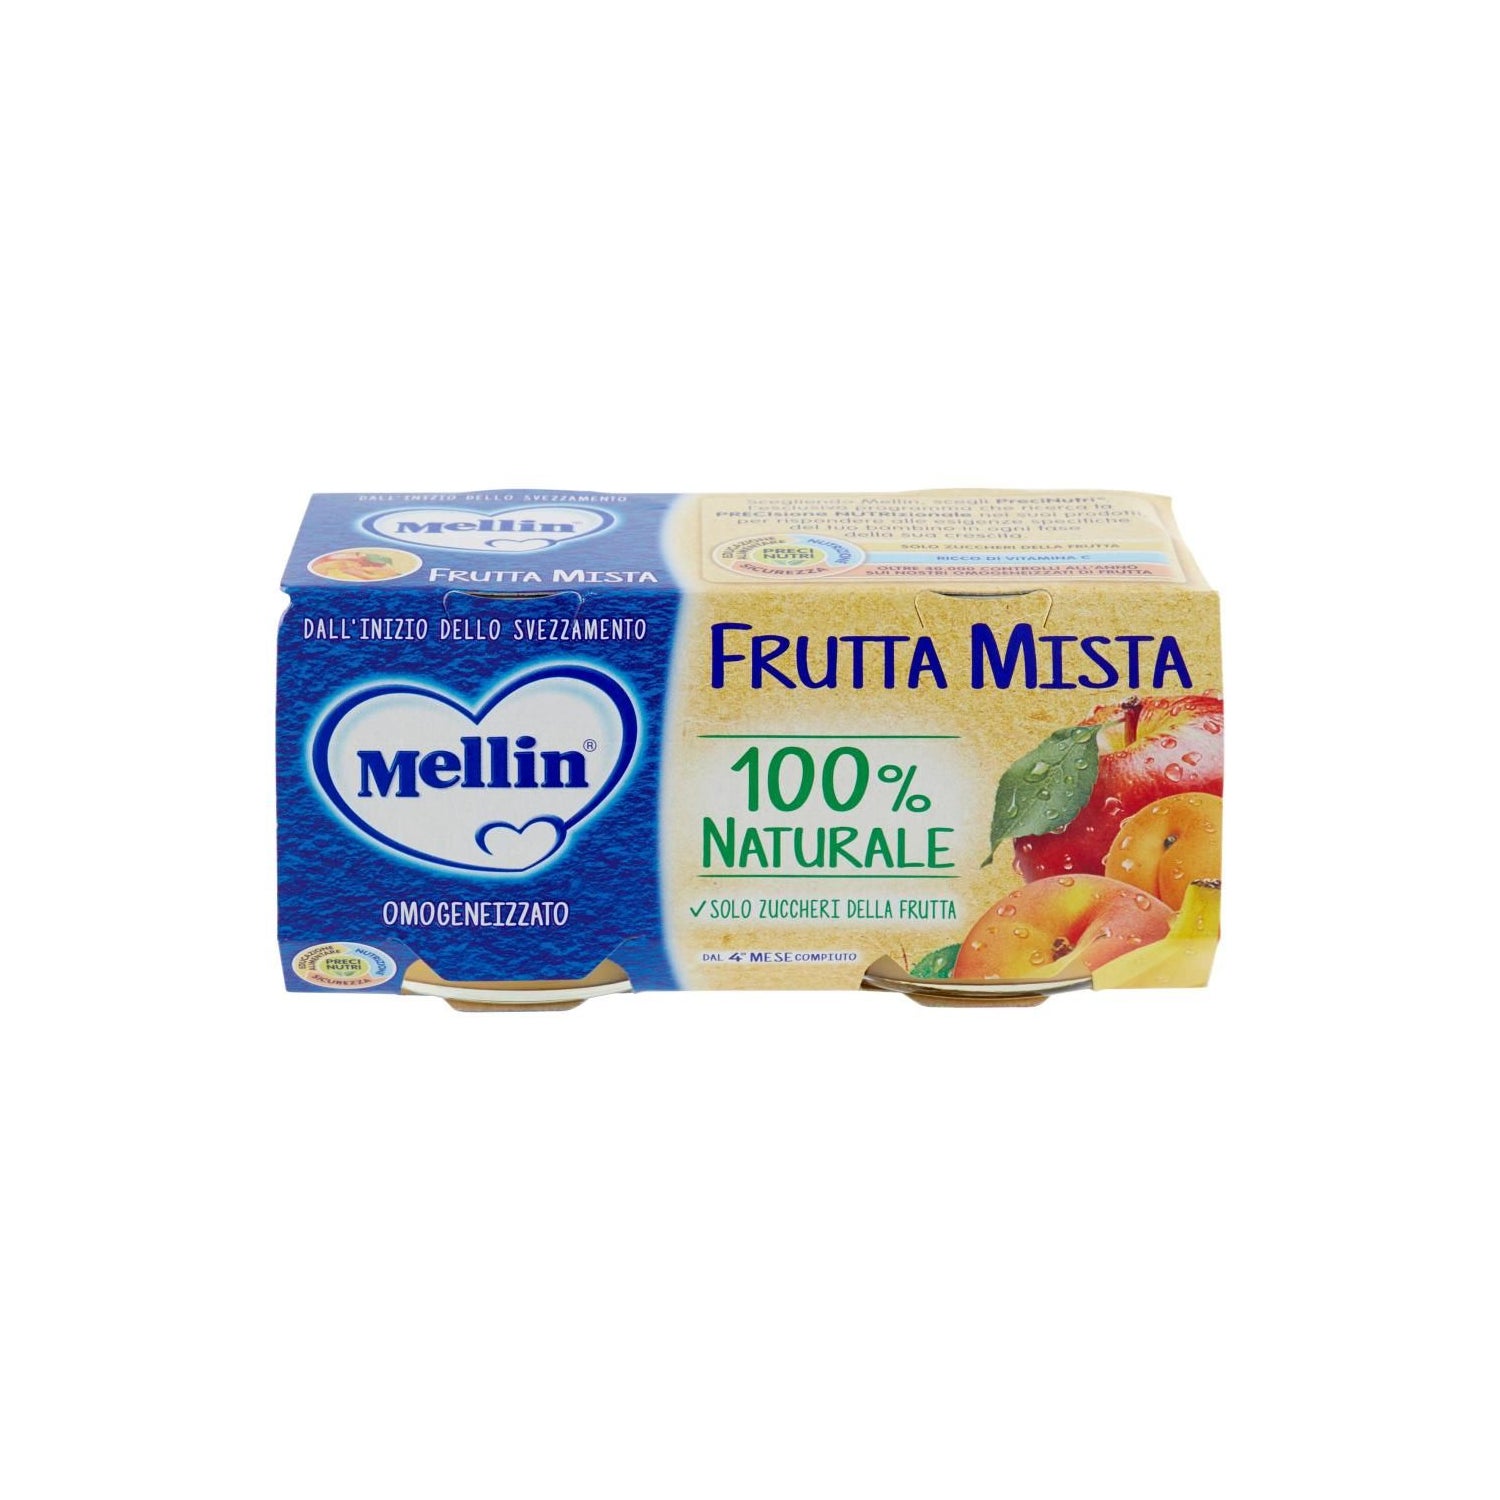 Mellin Pack Omogeneizzato Frutta Mix 3x100g